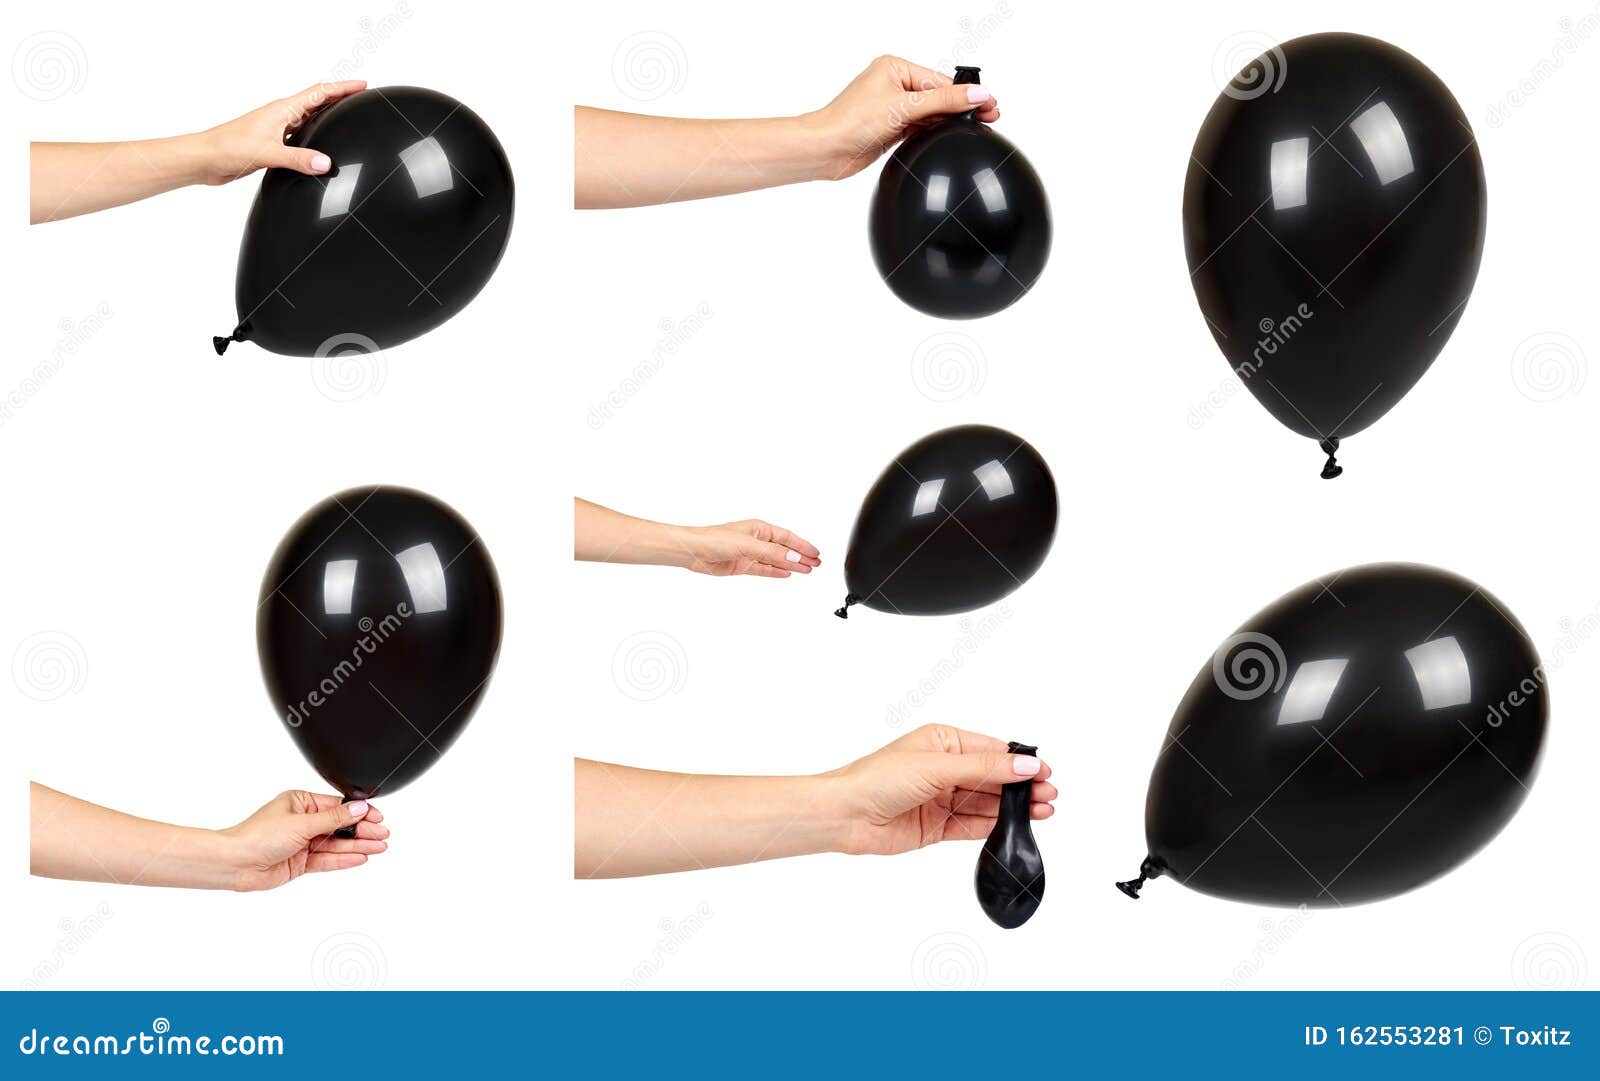 Imagen 3D fondo de globos negros aislados en blanco.Celebraciones y  aniversarios.Fiestas y eventos Stock Illustration